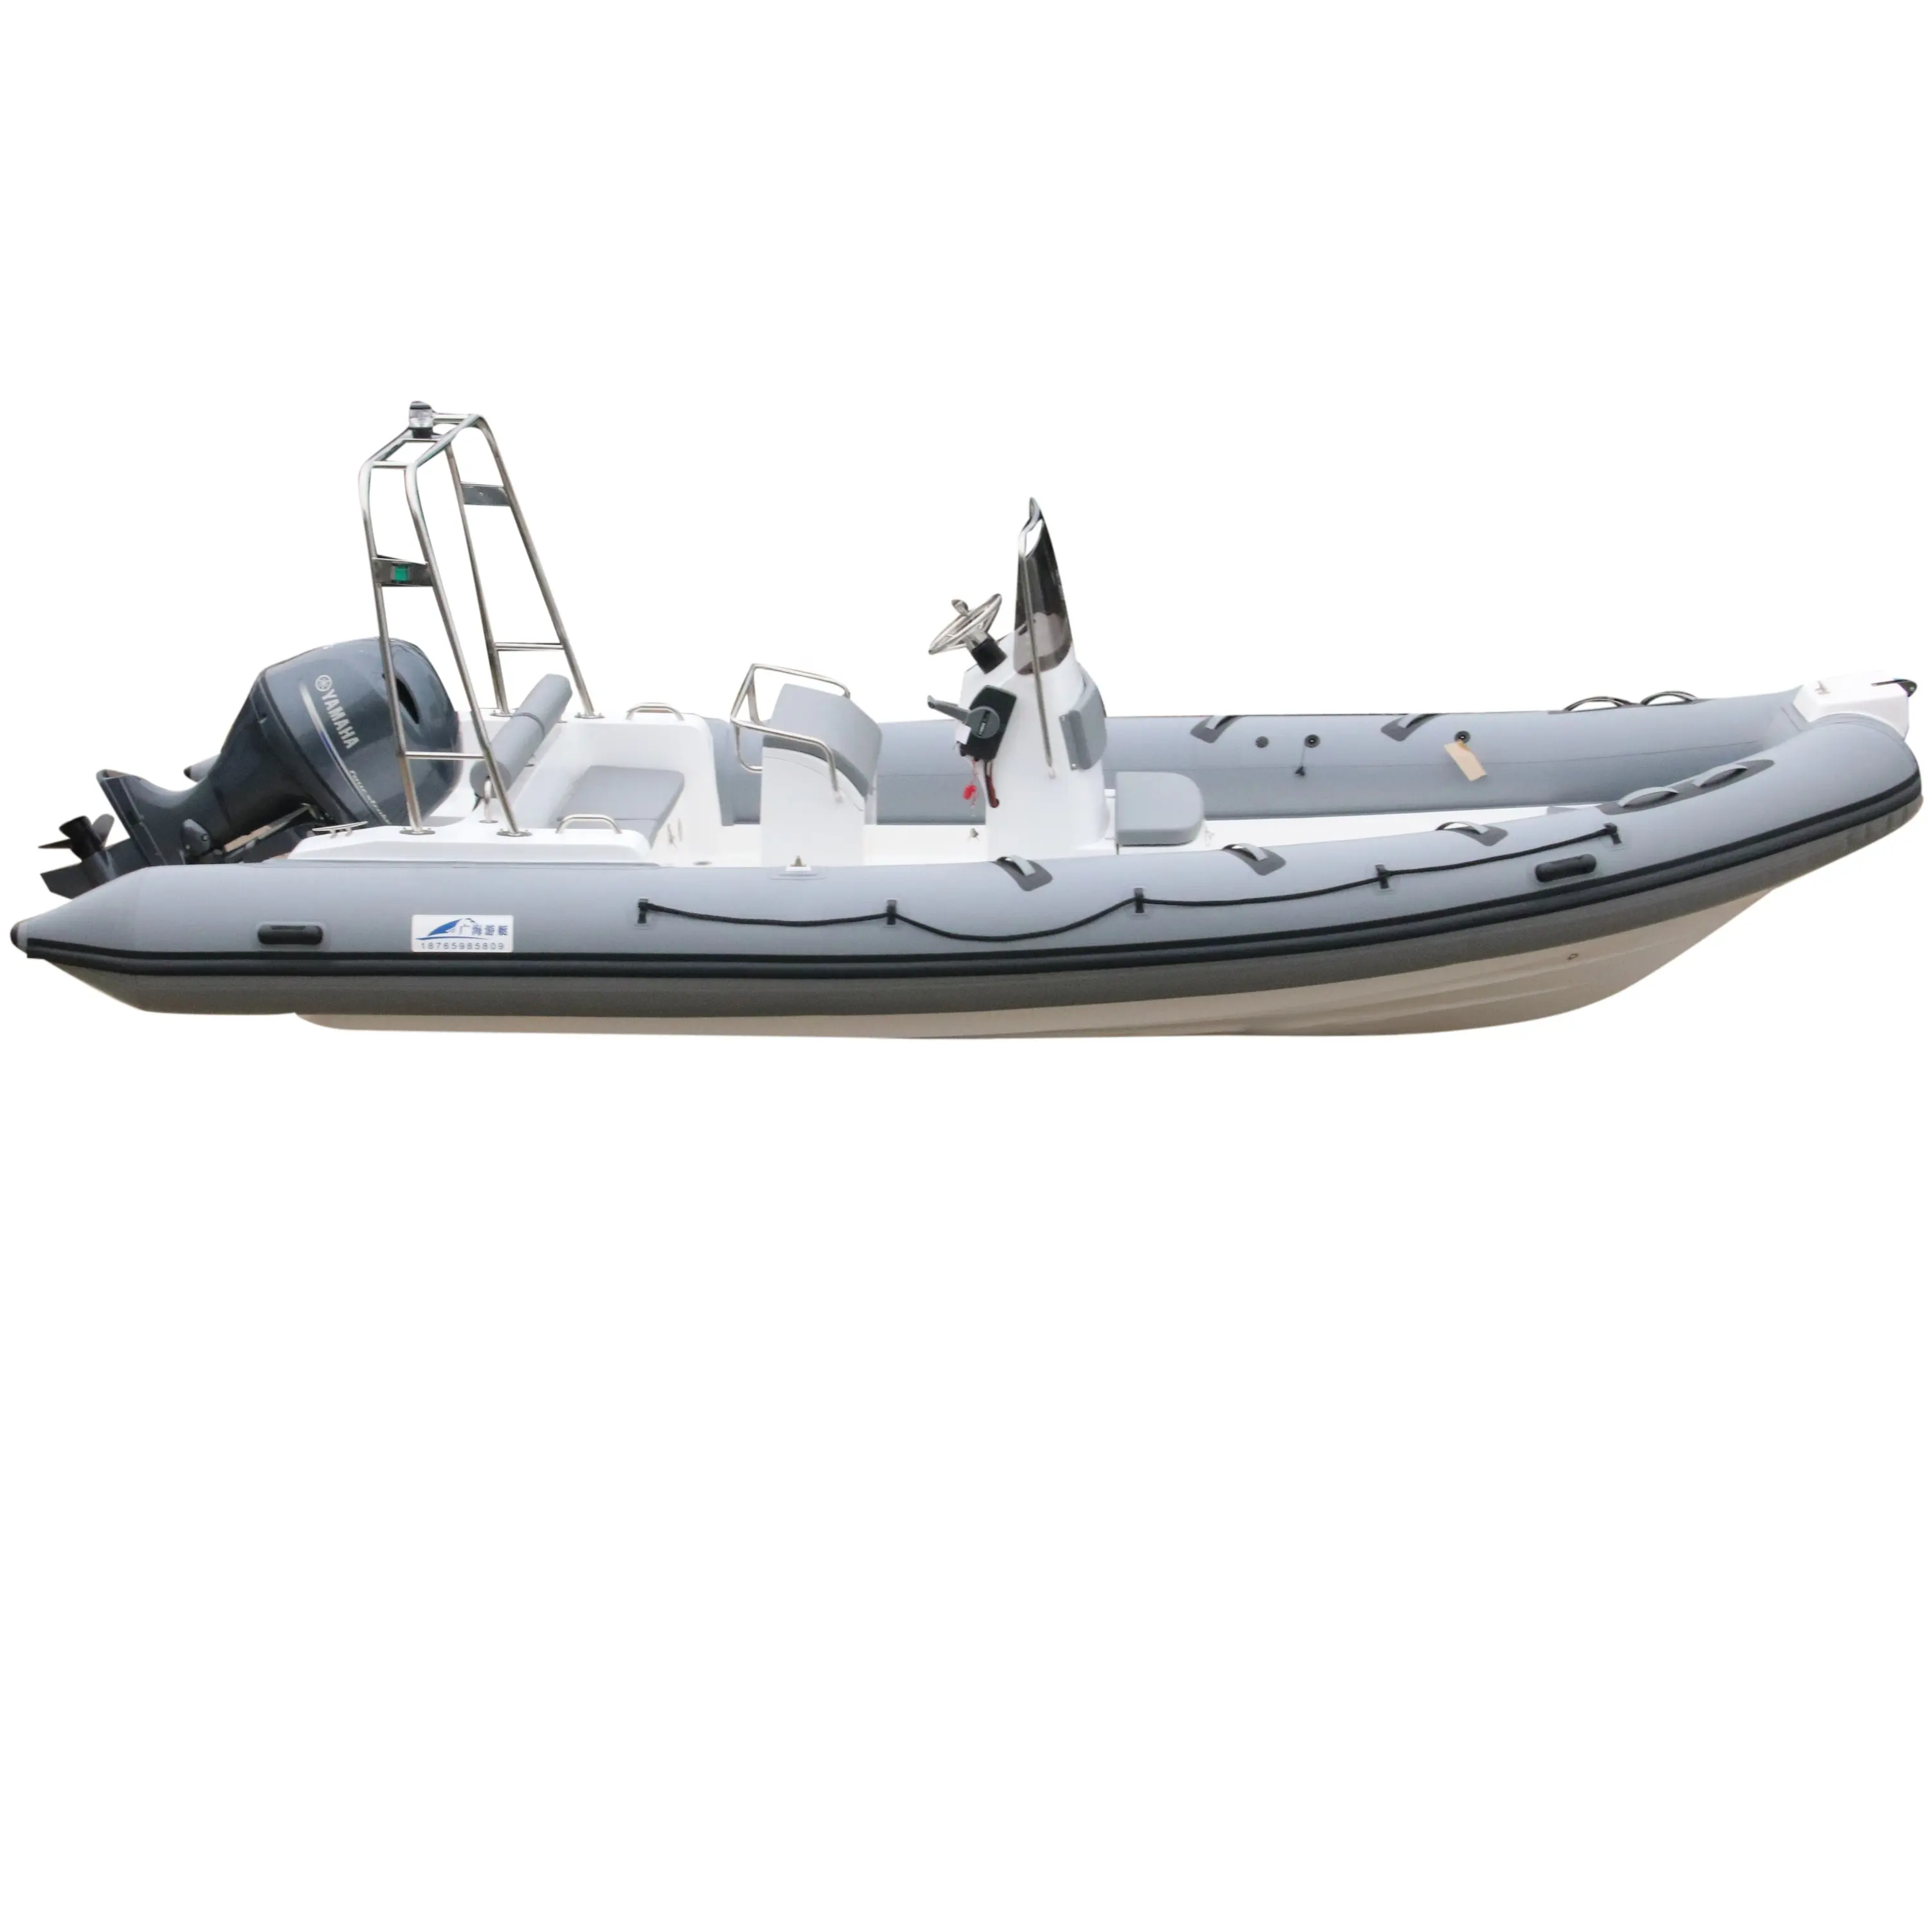 Goboat rib680 6.8m 225ft novo design, frp hull hipalon inflável, fibra de vidro, barco, pesca, iate, venda rib680b